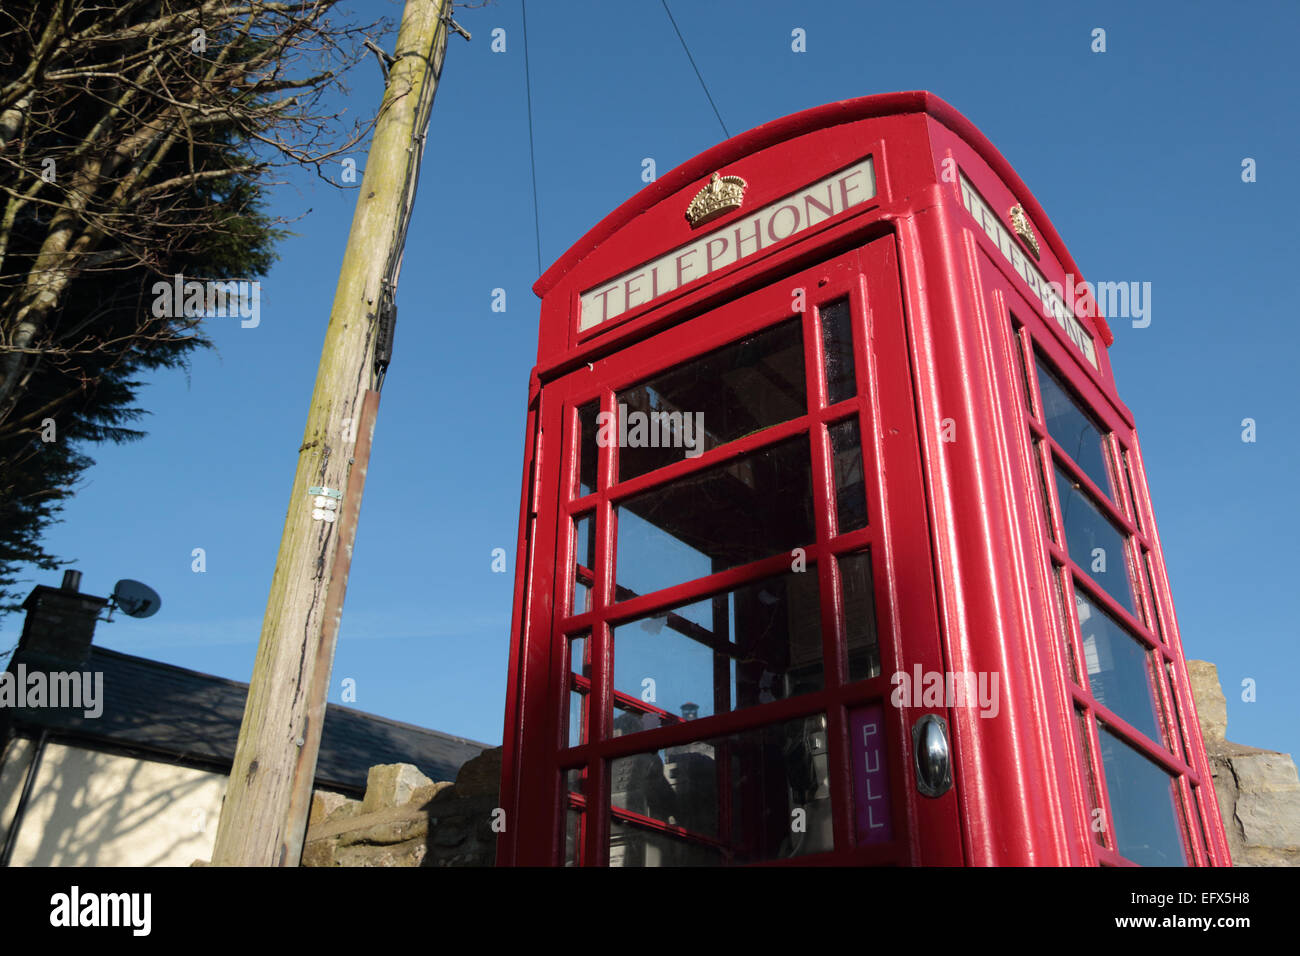 British iconic red telephone box Stock Photo